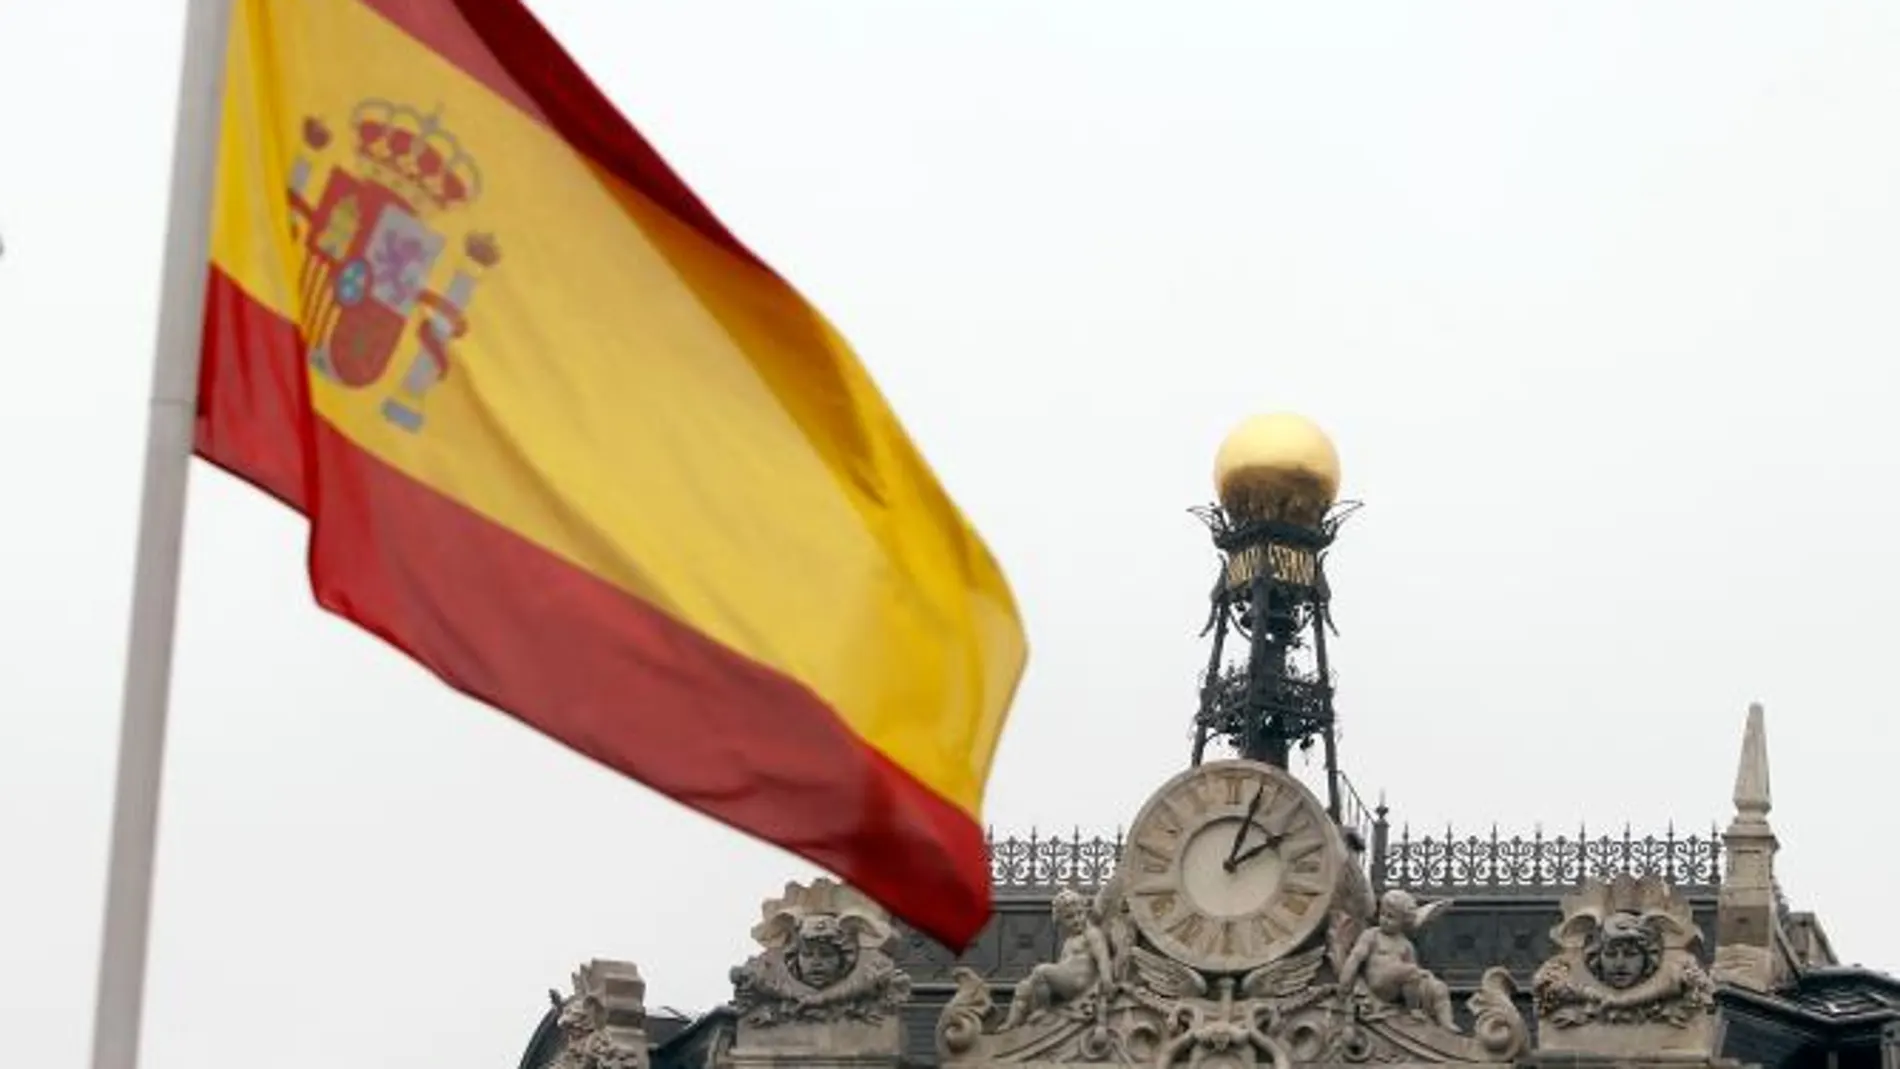 España ahorra 1835 millones en subastas desde la llegada del PP